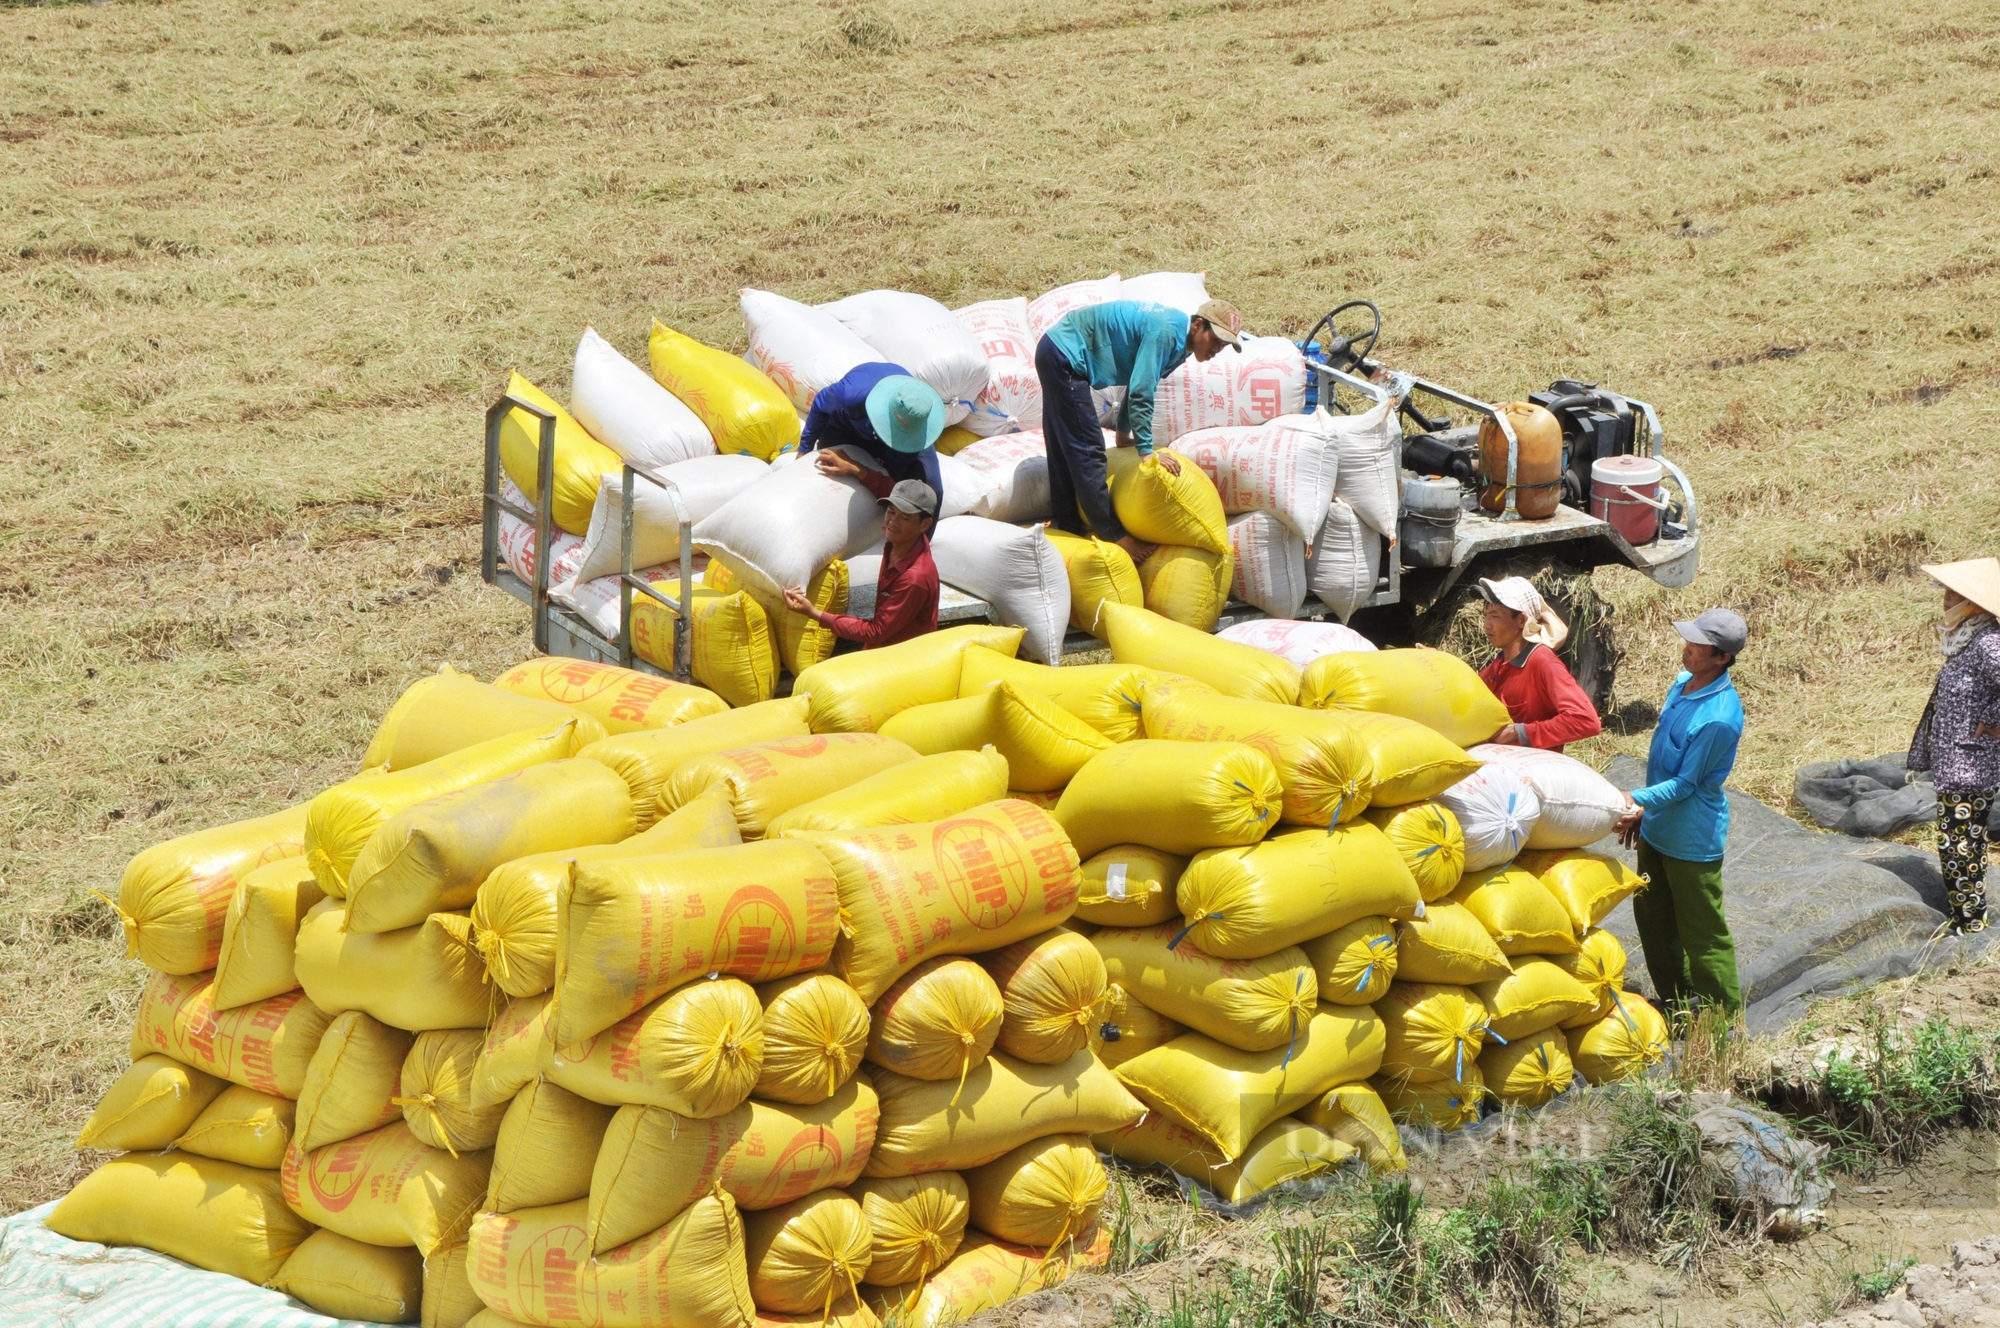 Đề án 1 triệu ha lúa: Người trồng lúa dễ có thêm 16.000 tỉ đồng/năm khi có hợp tác công tư - Ảnh 2.